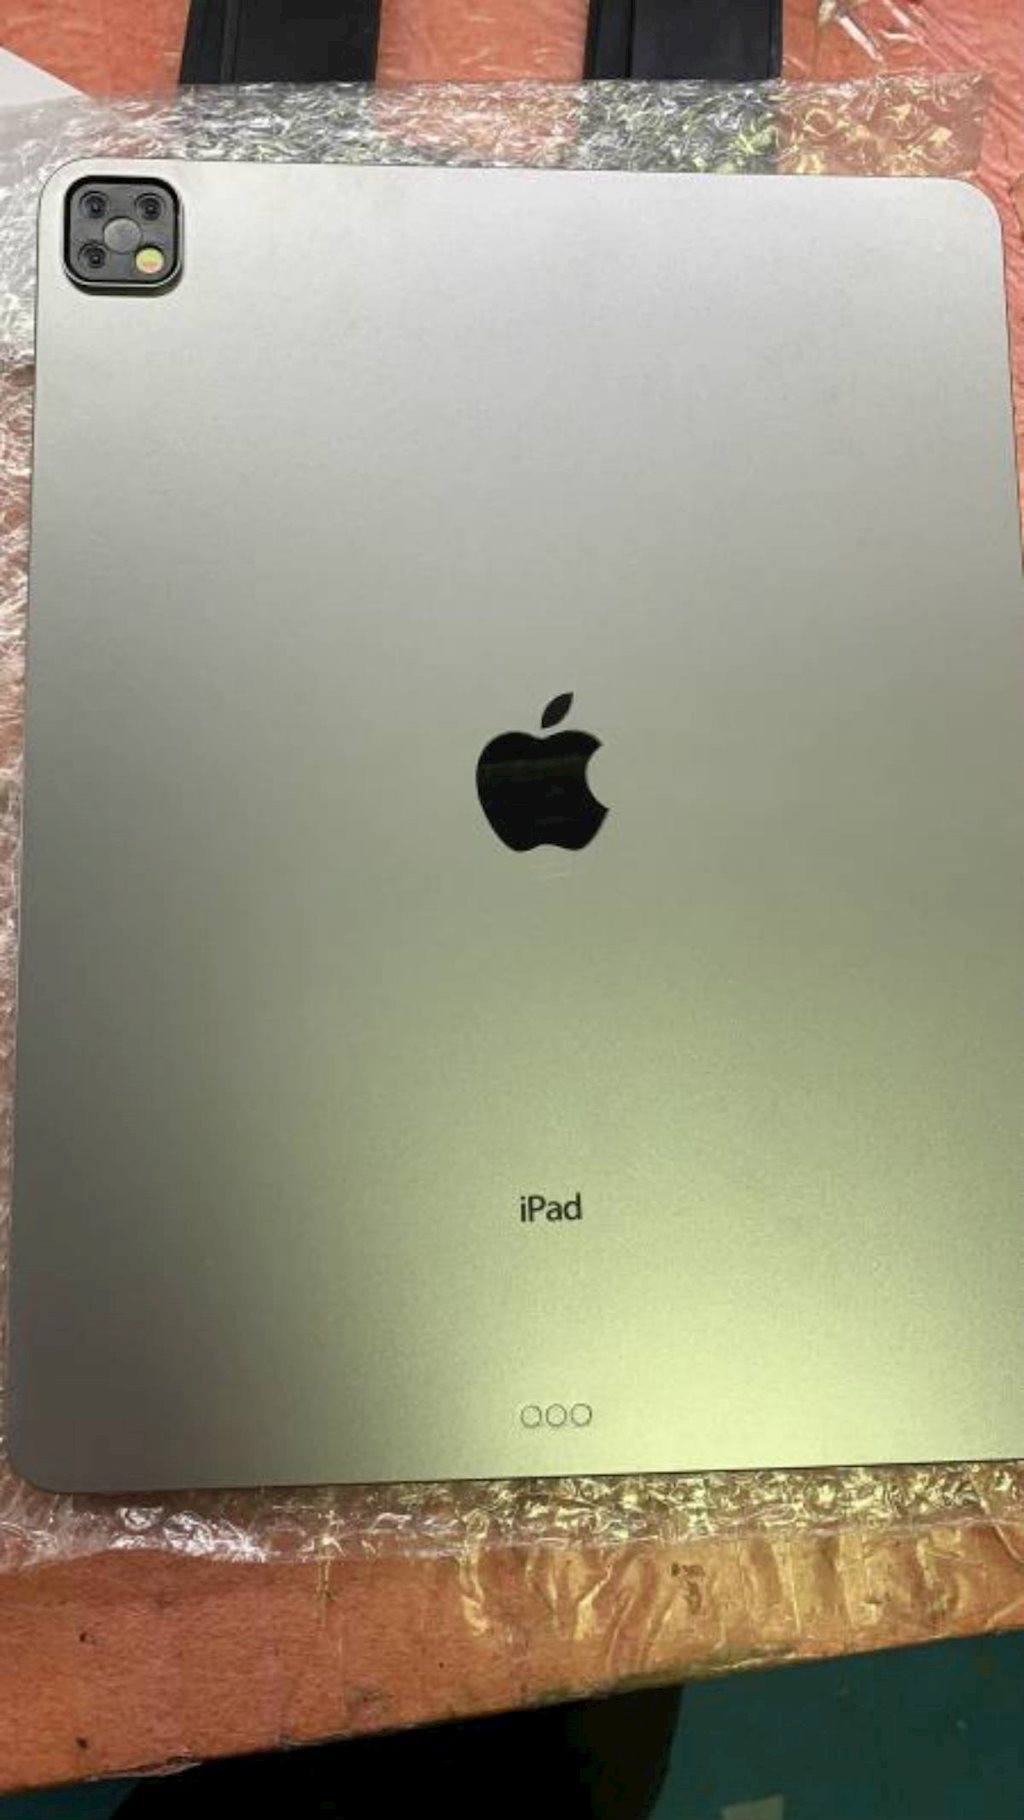 iPad 2019 sẽ có cụm camera nhiều lỗ như iPhone 11 Pro?